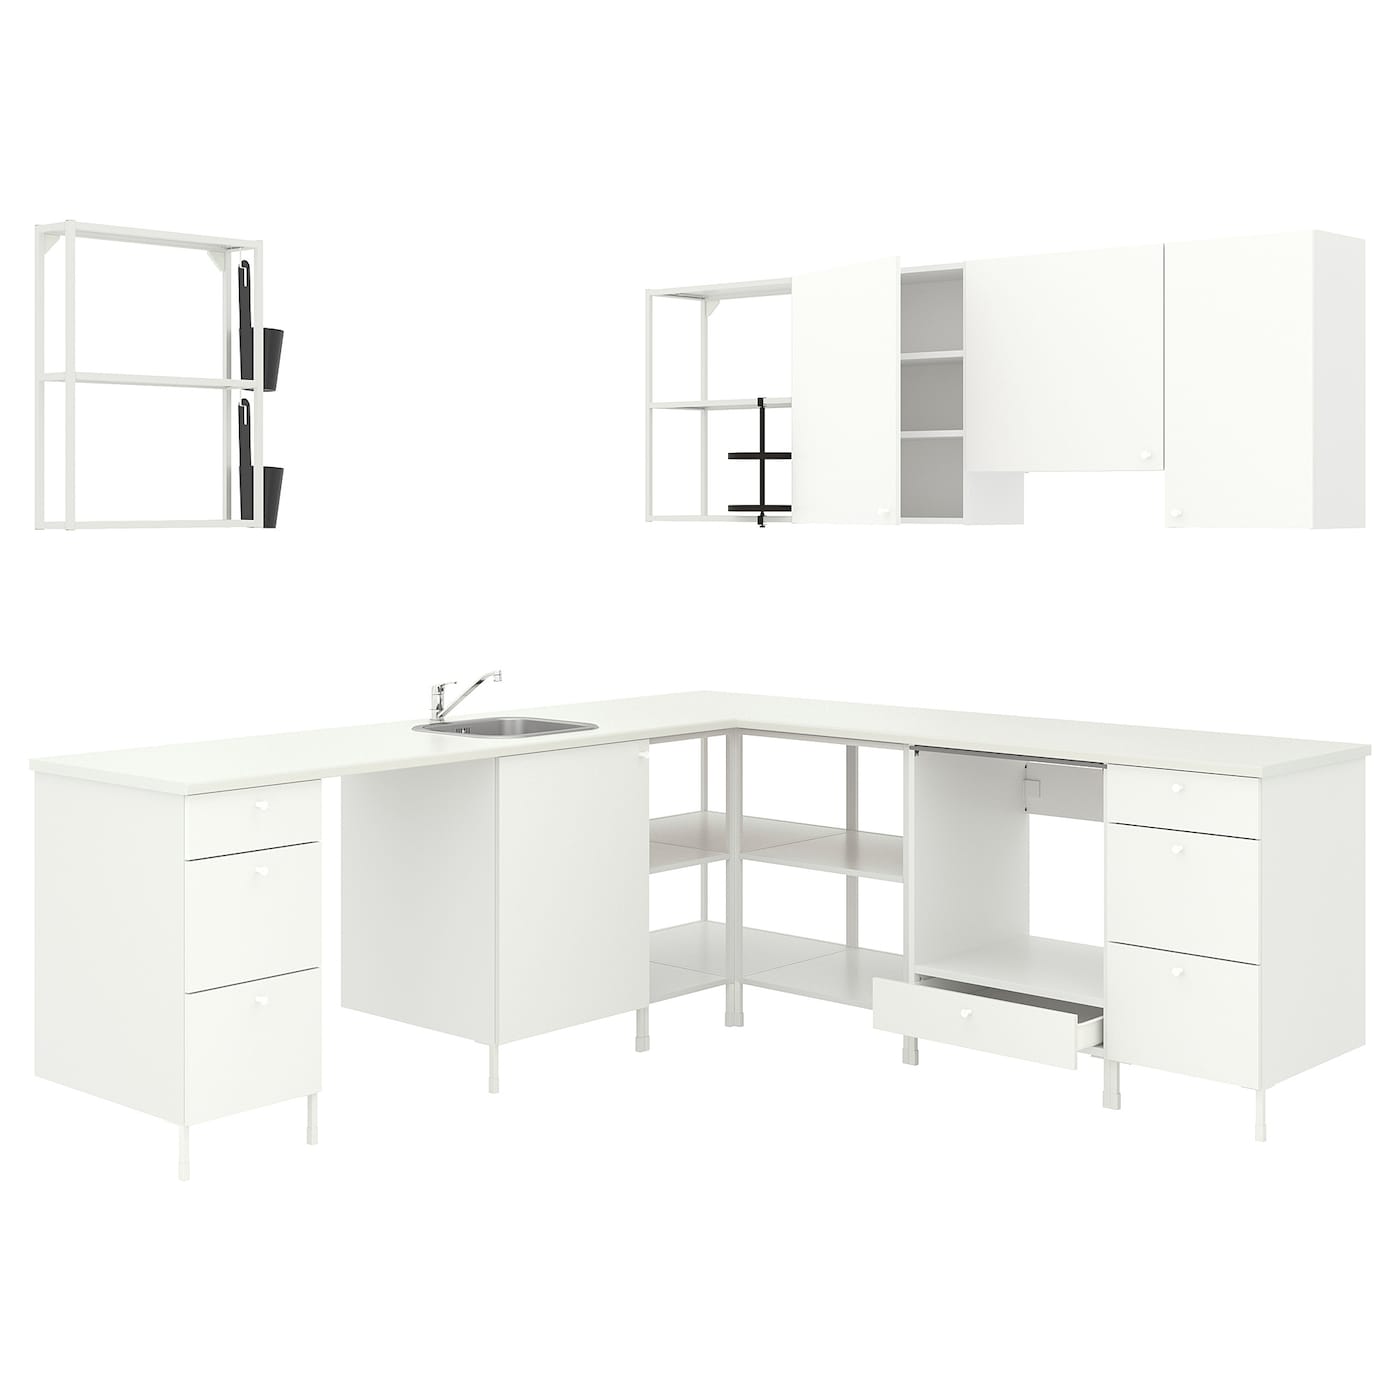 Угловая кухня -  ENHET  IKEA/ ЭНХЕТ ИКЕА, 261,5х75 см, белый